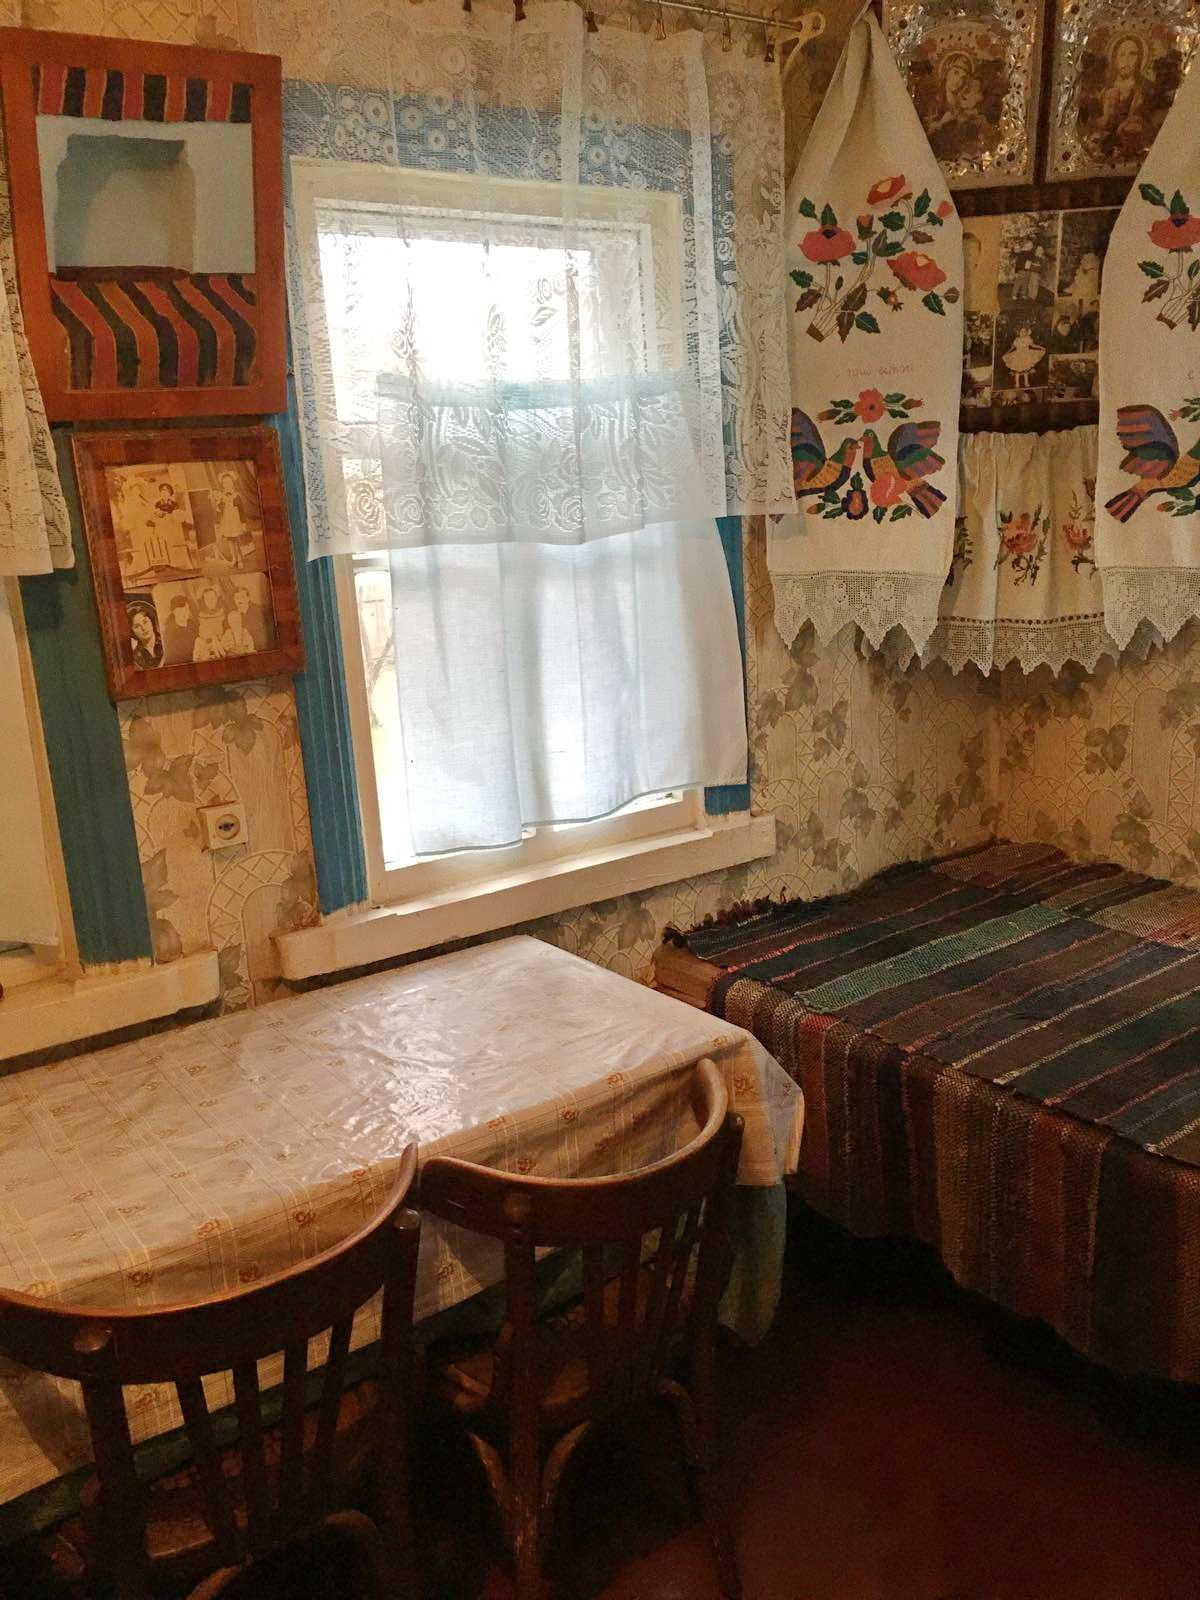 Продам дом  будинок в Броварському р-ні  Київськоі обл. с. Рудницьке